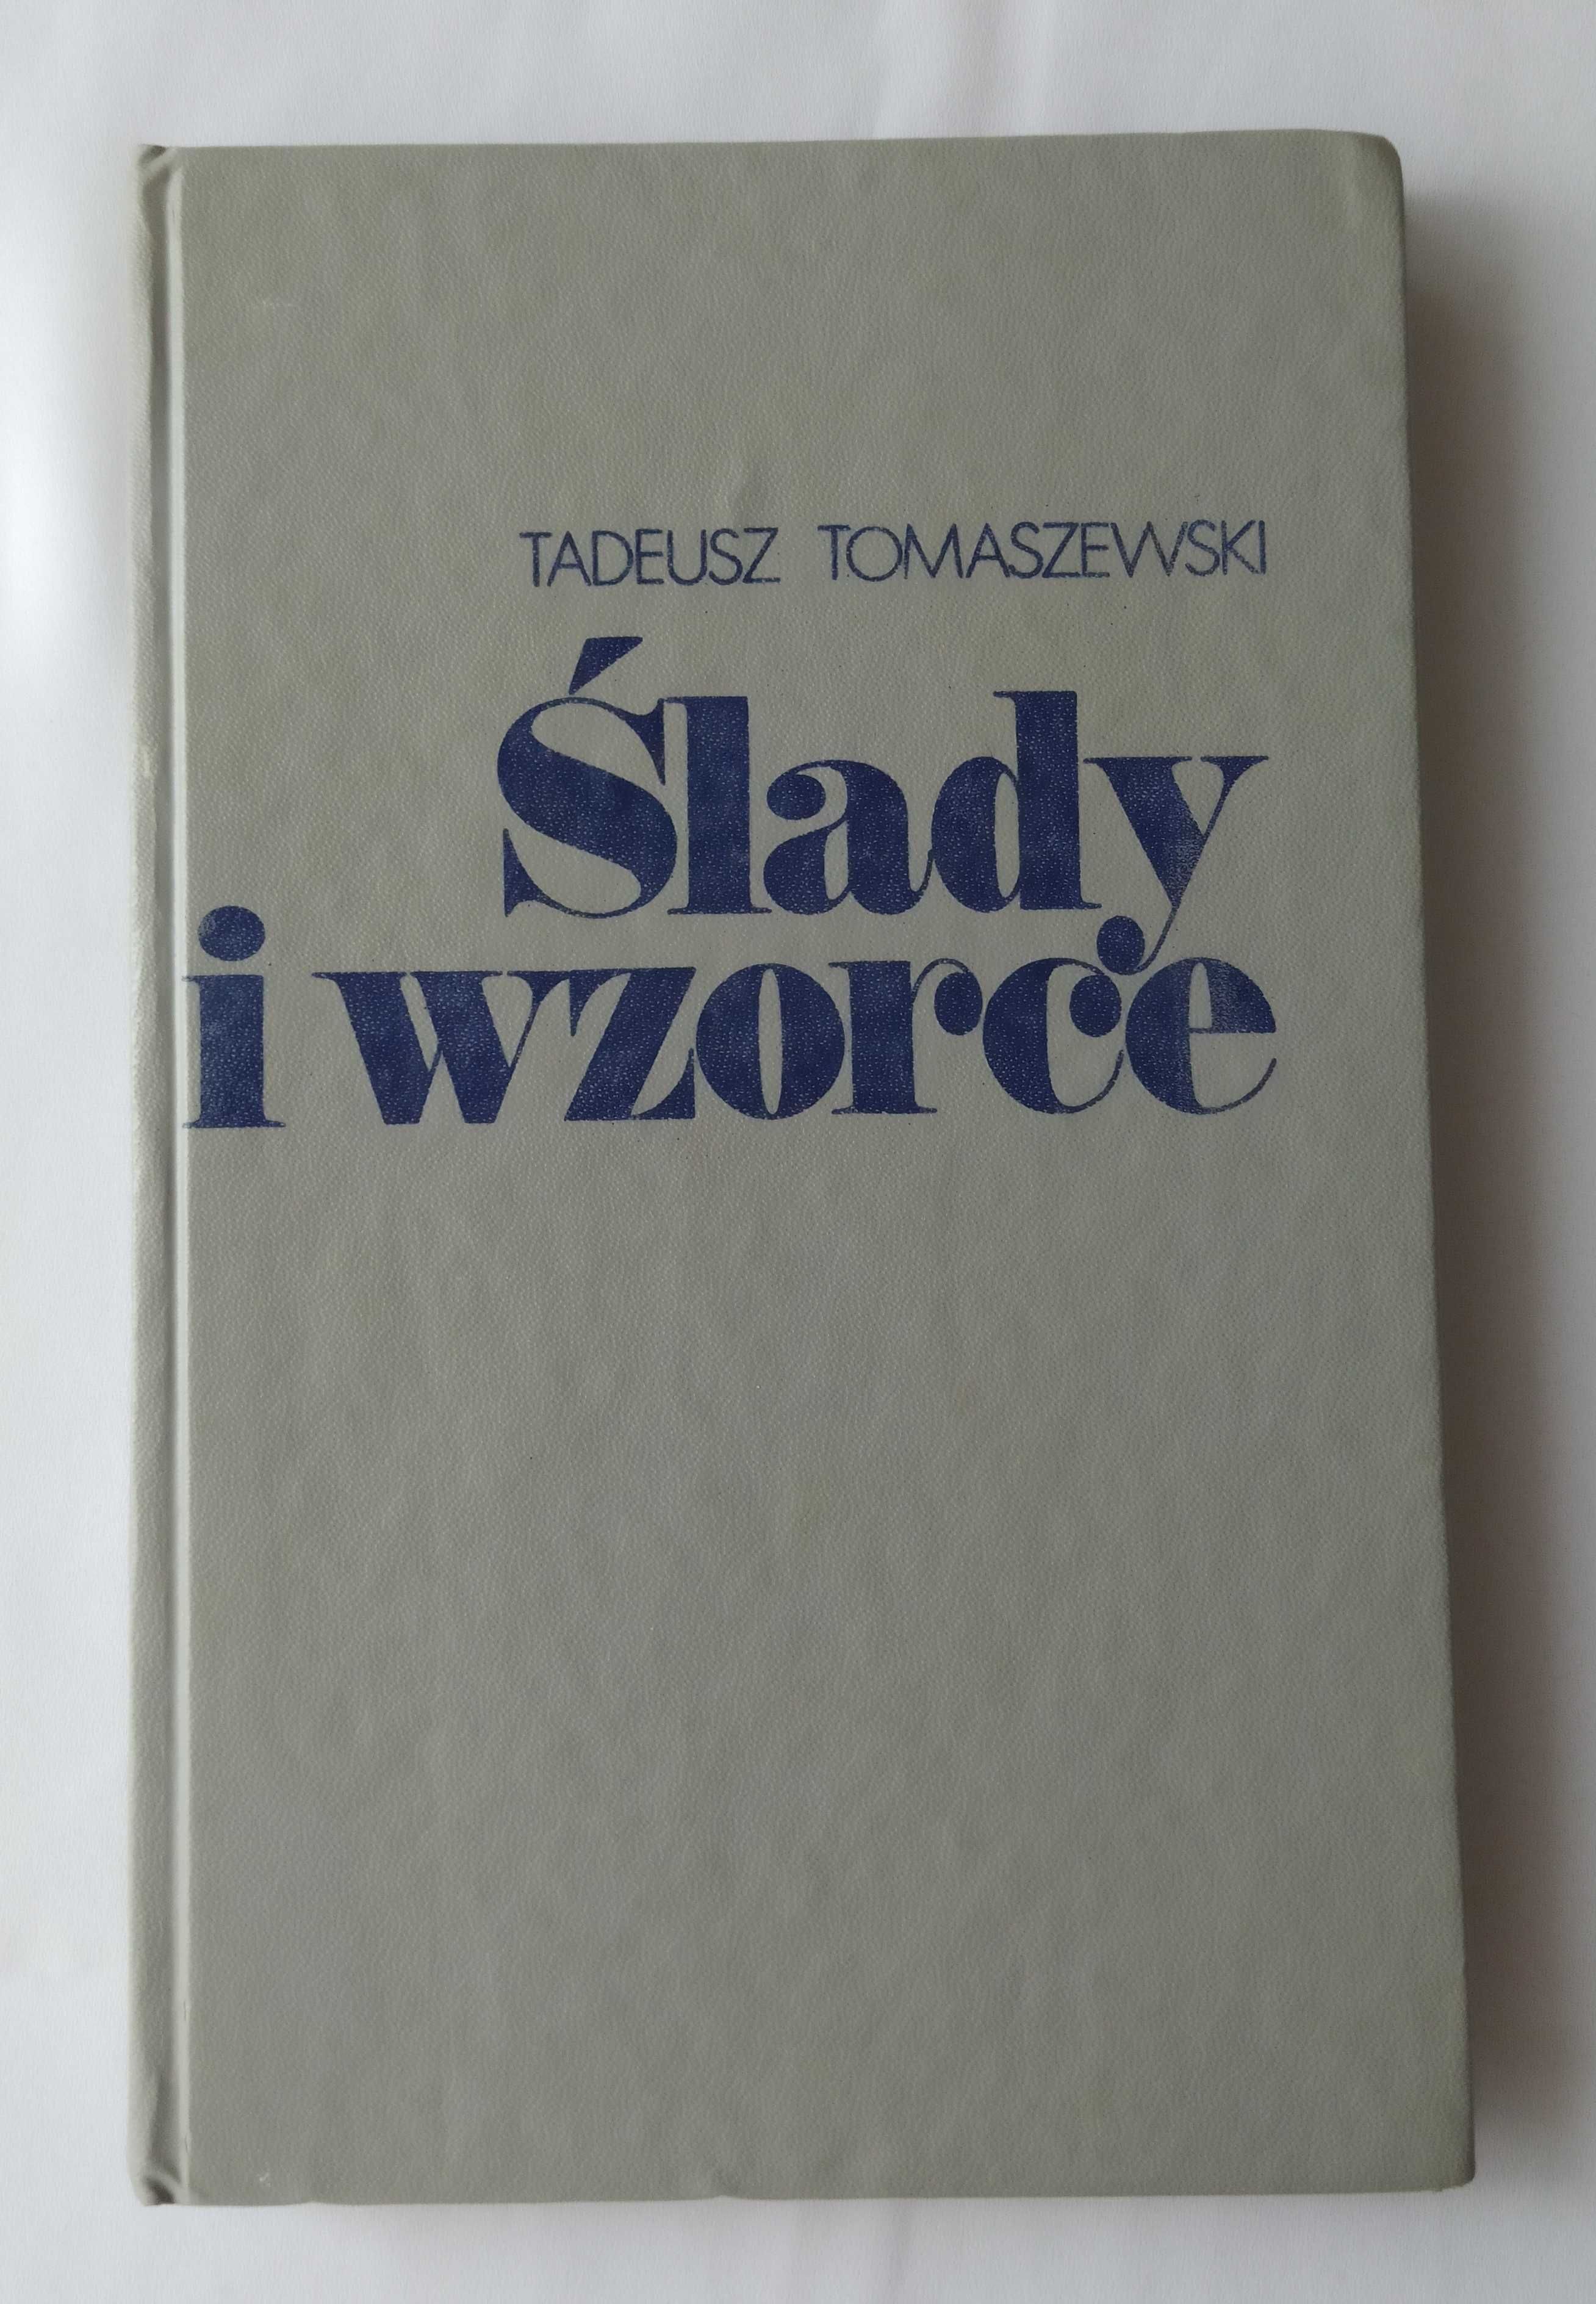 ŚLADY i WZORCE – Tadeusz Tomaszewski